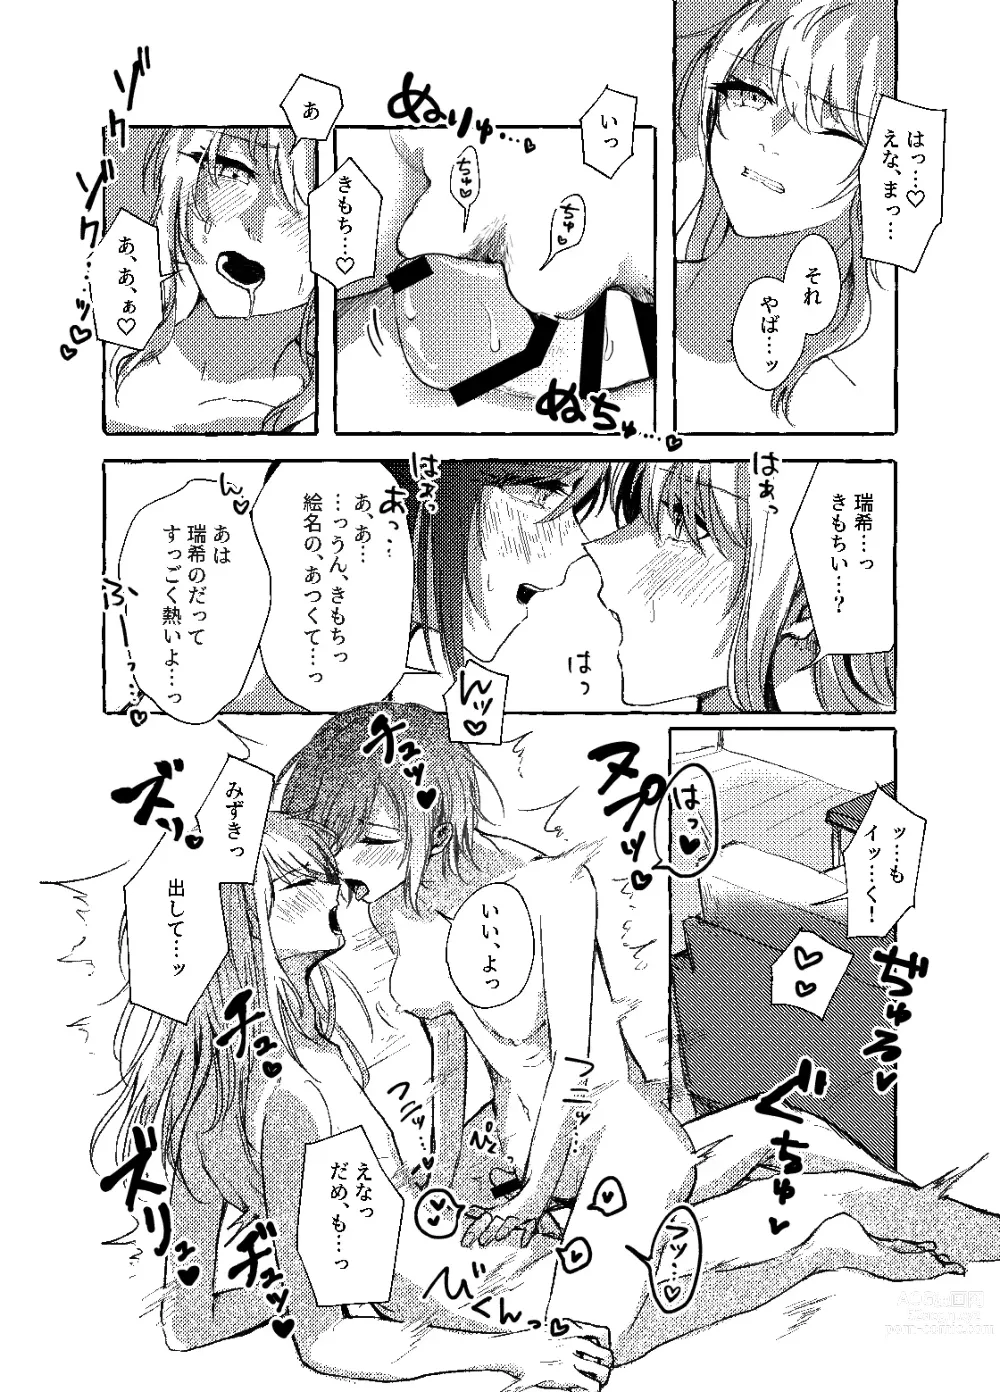 Page 21 of doujinshi Hakoniwa no Naka no Kimi